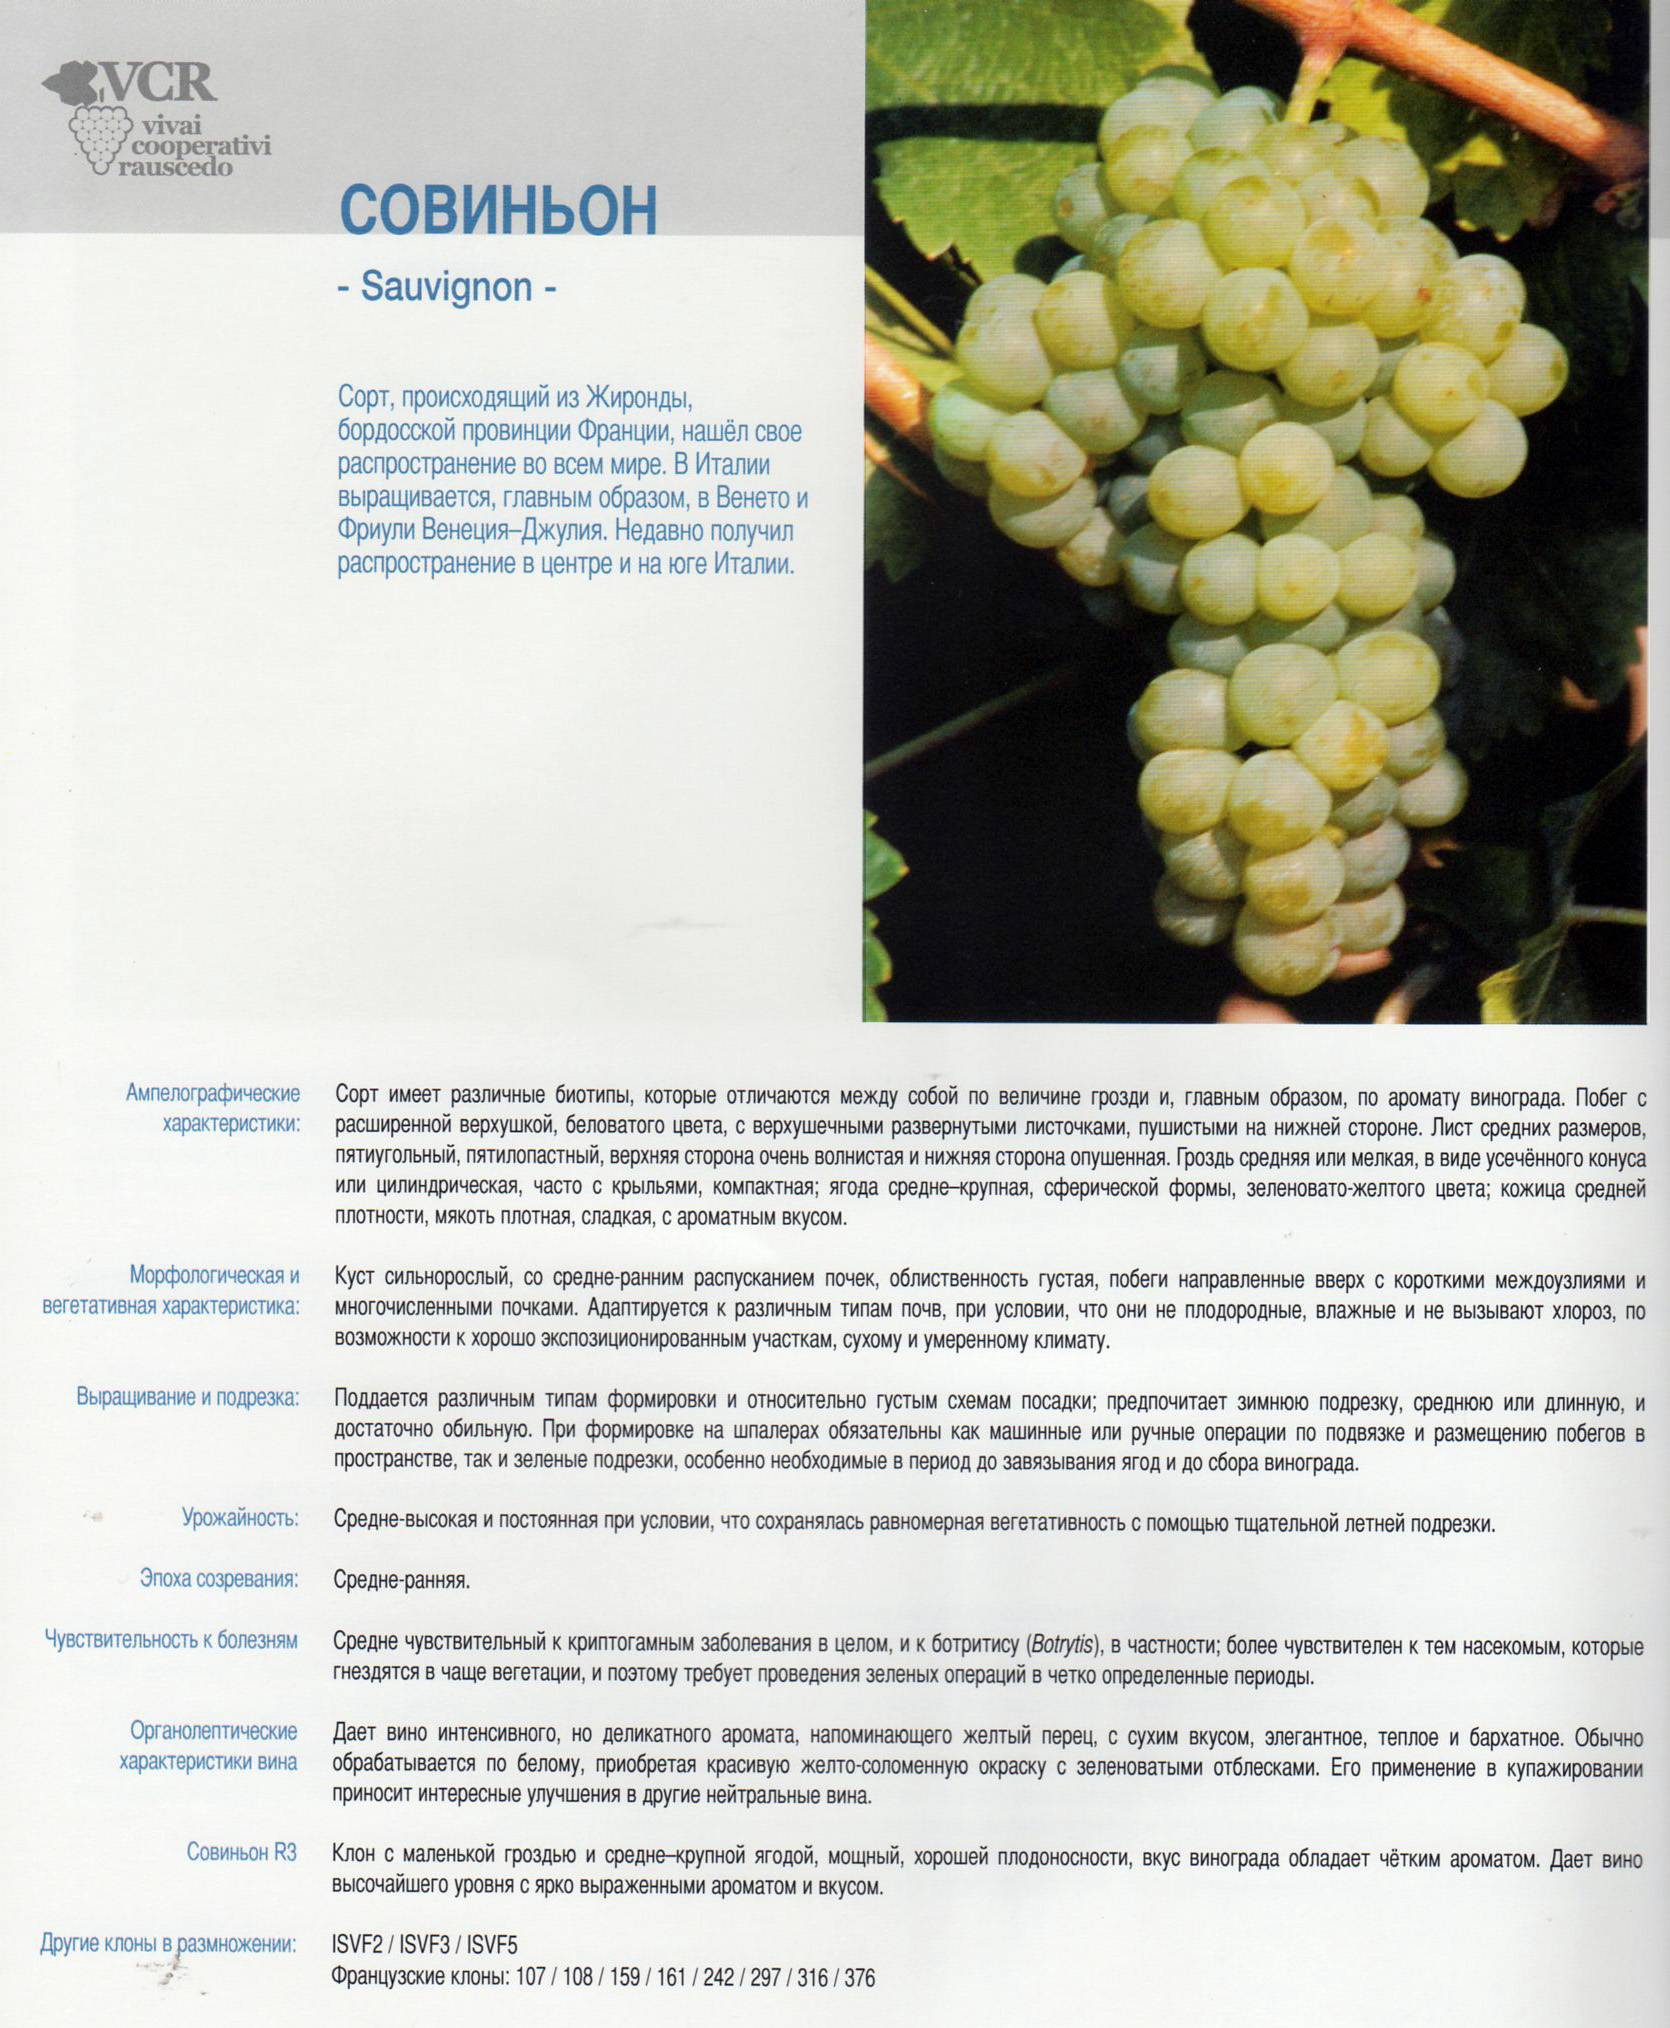 Сорт винограда шардоне | wine expertise